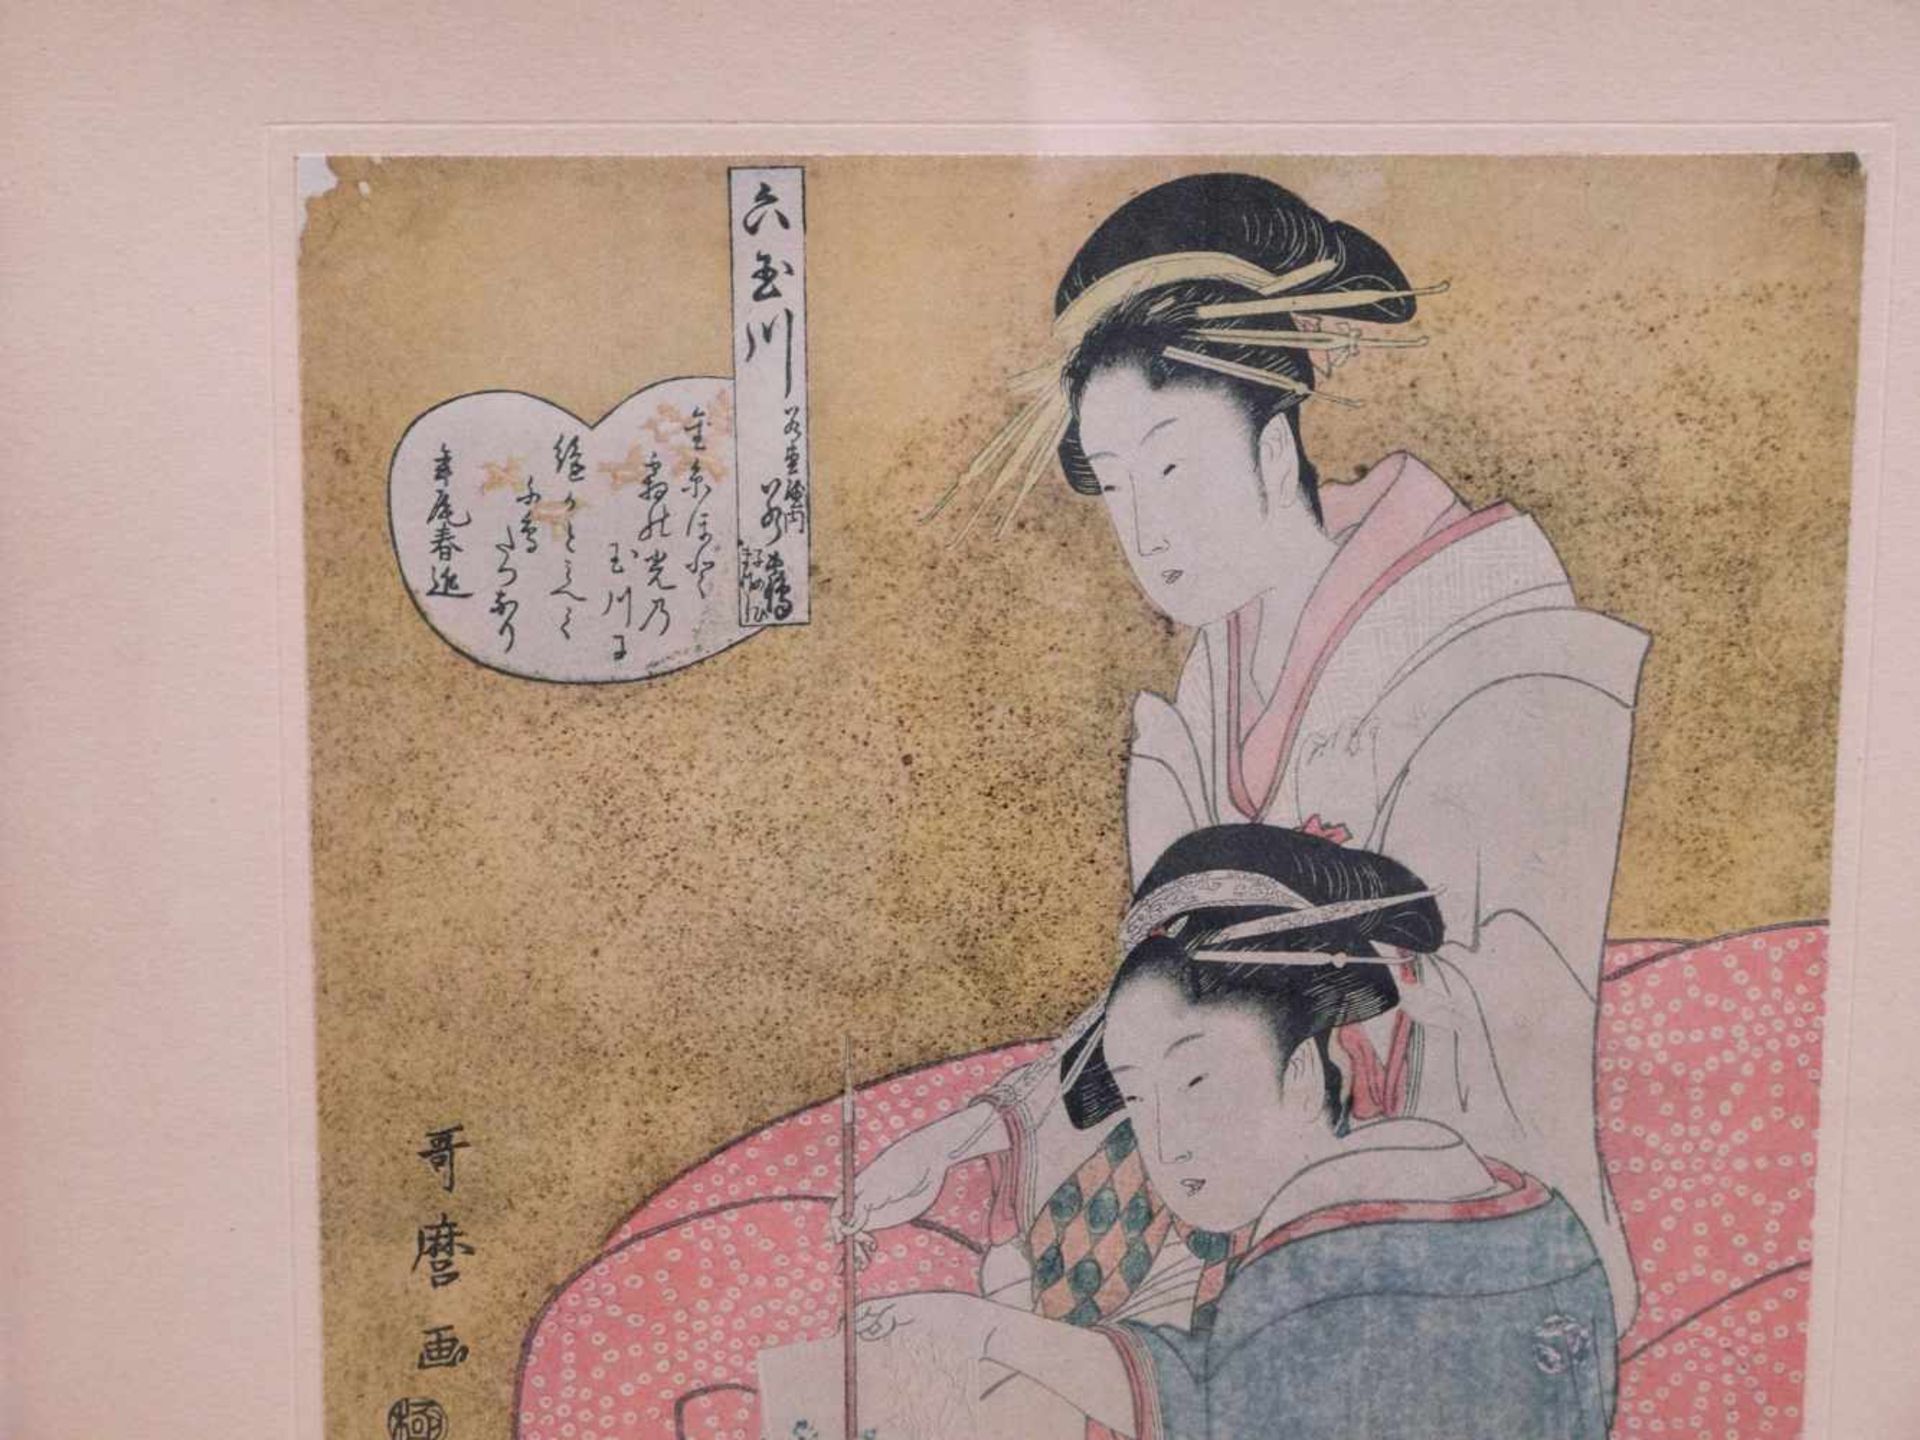 3 japanische ukiyo-e Holzdrucke 19. Jhd.Interieurdarstellungen mit jungen Mädchen beim Zeitvertreib. - Bild 7 aus 8